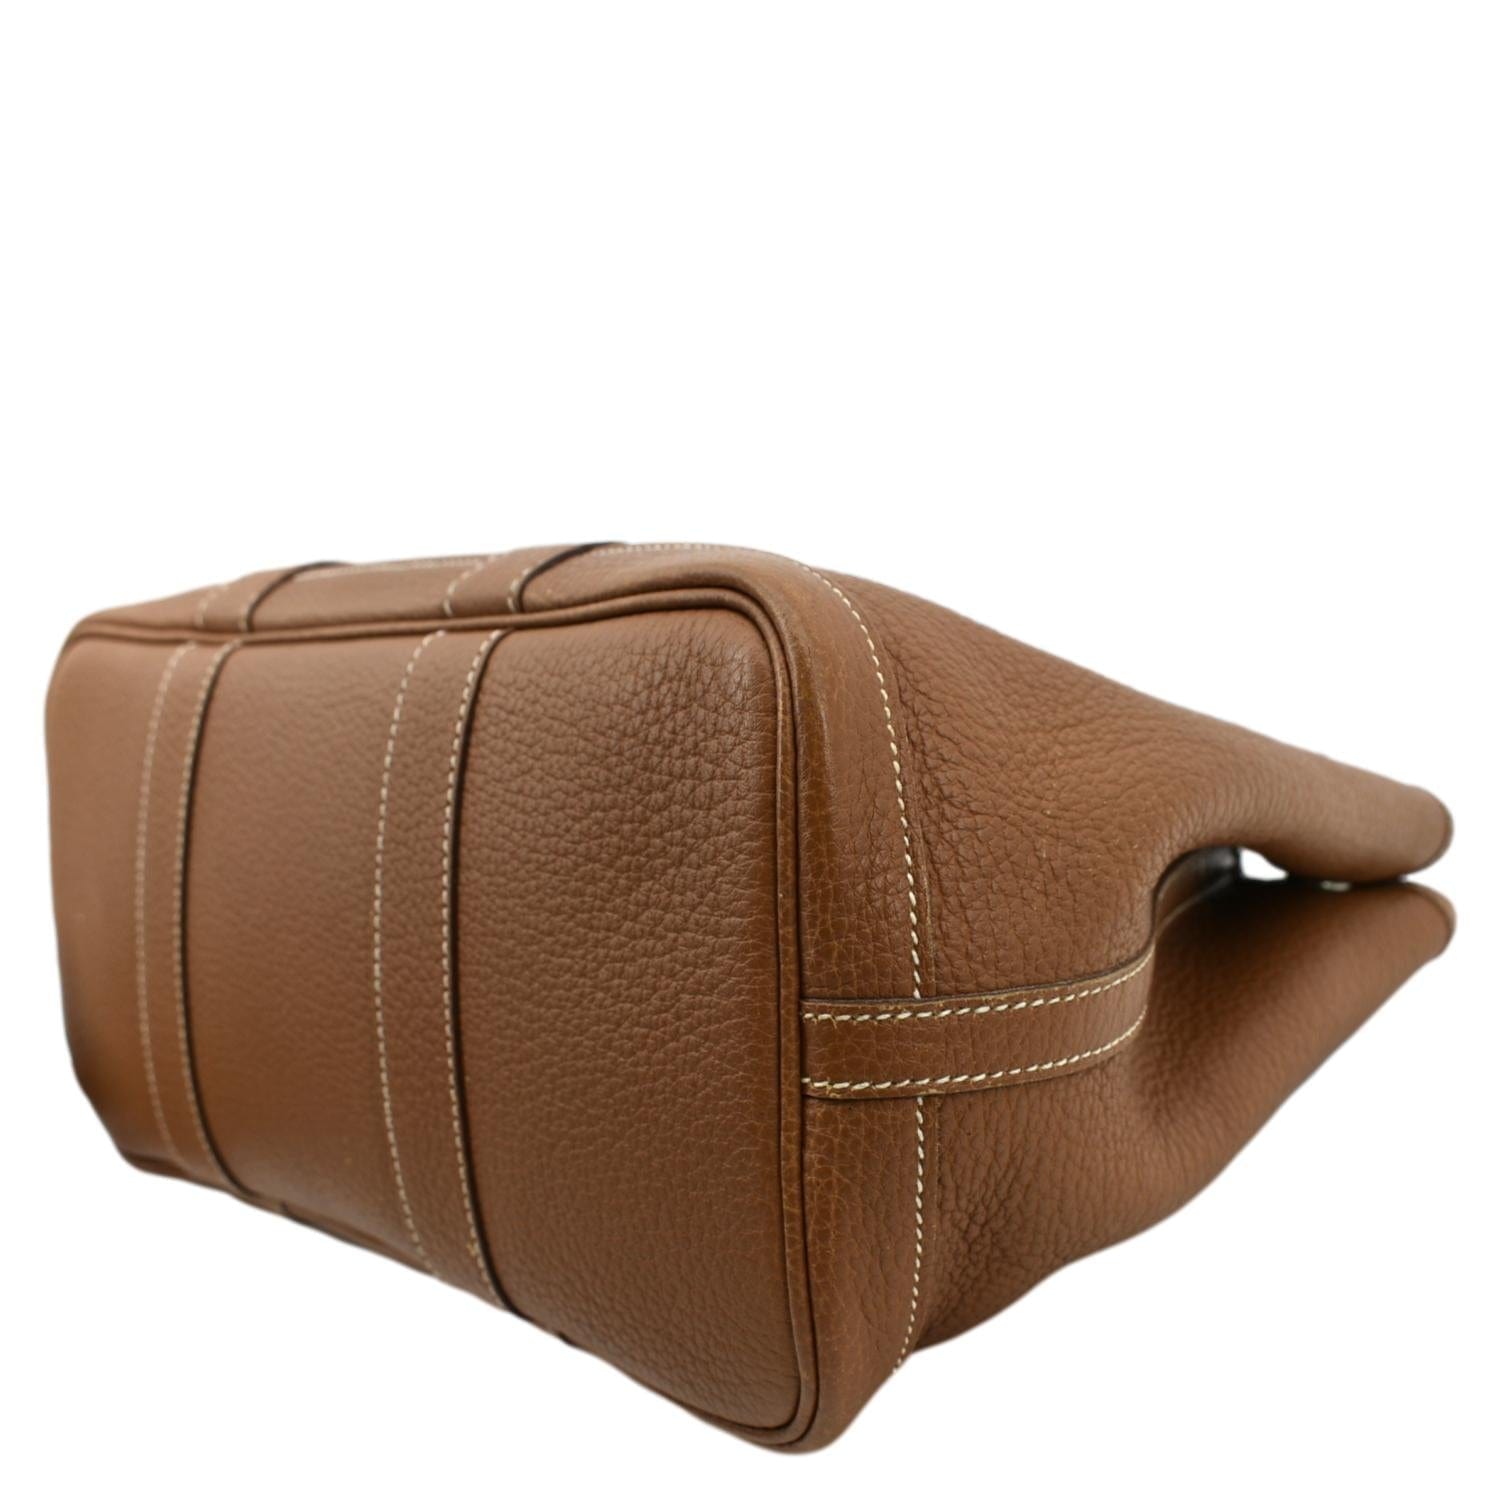 ○ Garden Party TPM Handbag ○ W33 × H20 × D14 cm ○ Condition